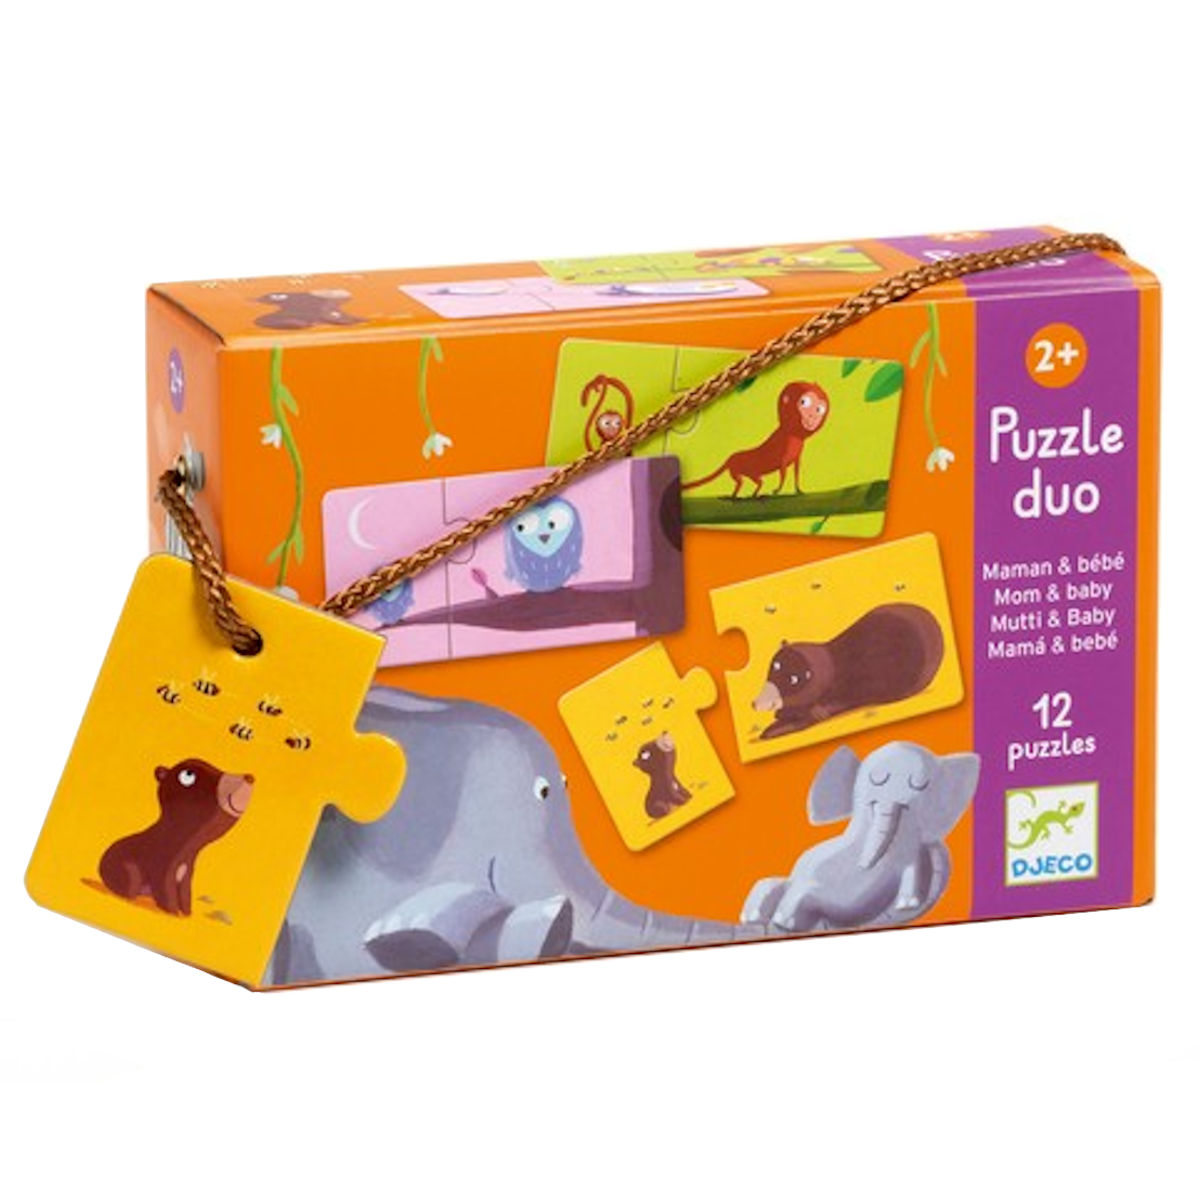 Puzzle Duo Maman & Bèbè - Set Puzzle 2 Pezzi - Djeco